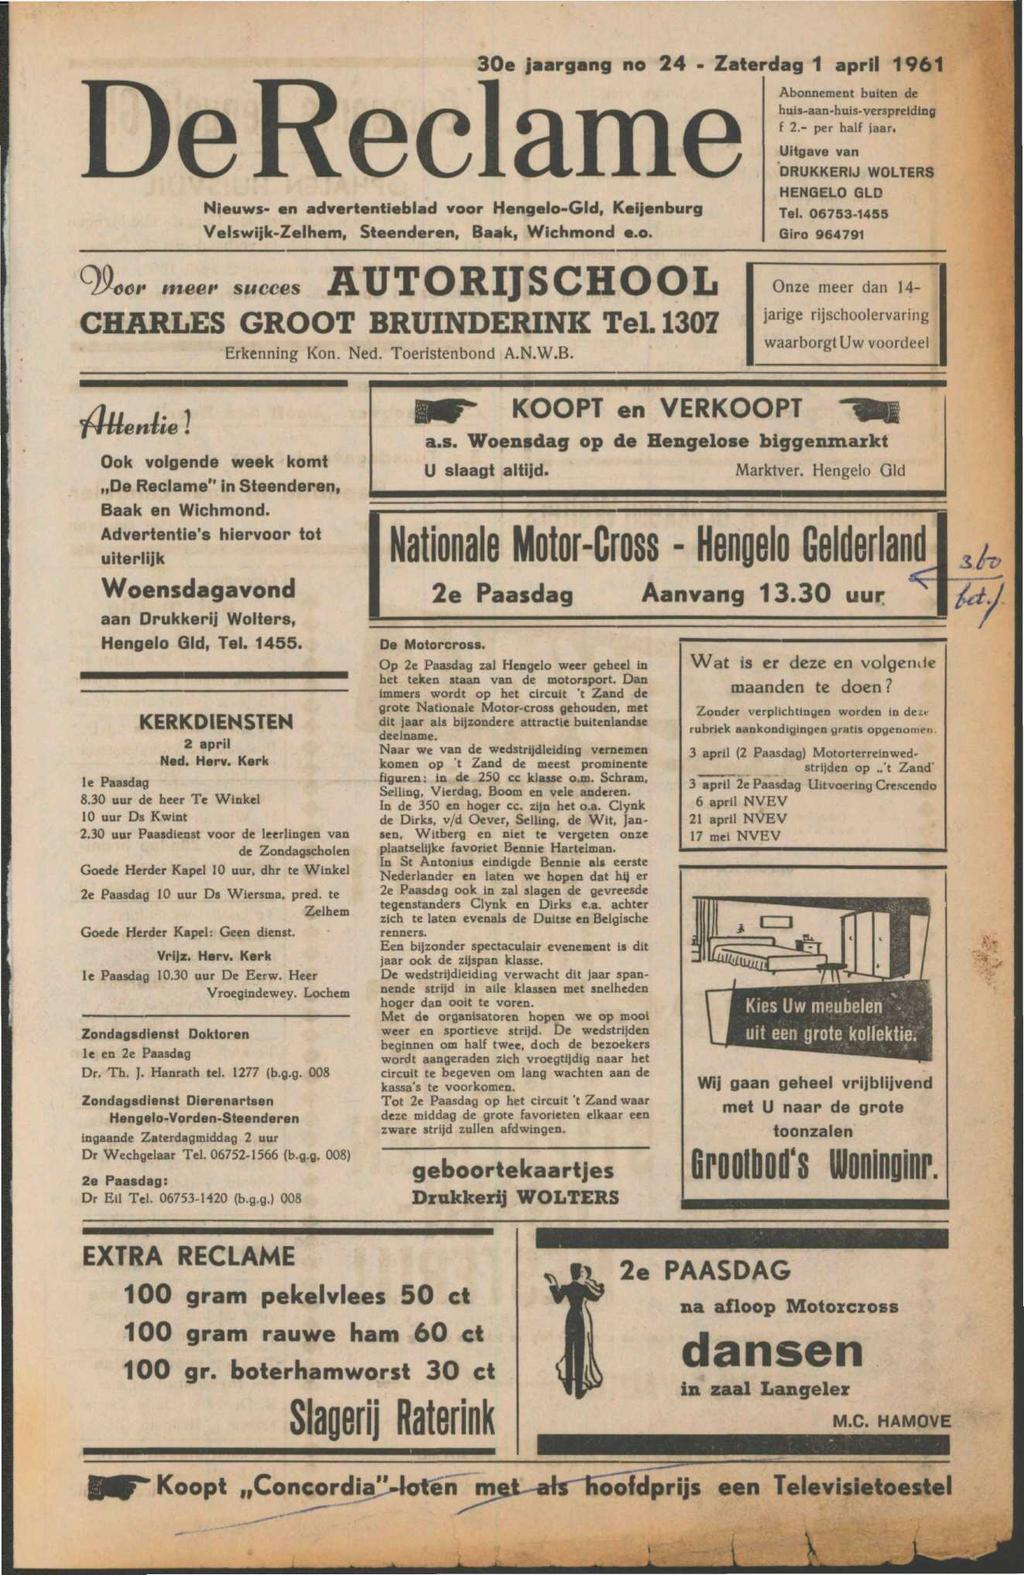 De Reclame Nieuws- en advertentieblad voor Hengelo-Gld, Keijenburg Velswijk-Zelhem, Steenderen, Baak, Wichmond c.o. 30e jaargang no 24 - Zaterdag 1 april 1961 Abonnement buiten de huis-aan-huis-verspreiding f 2.